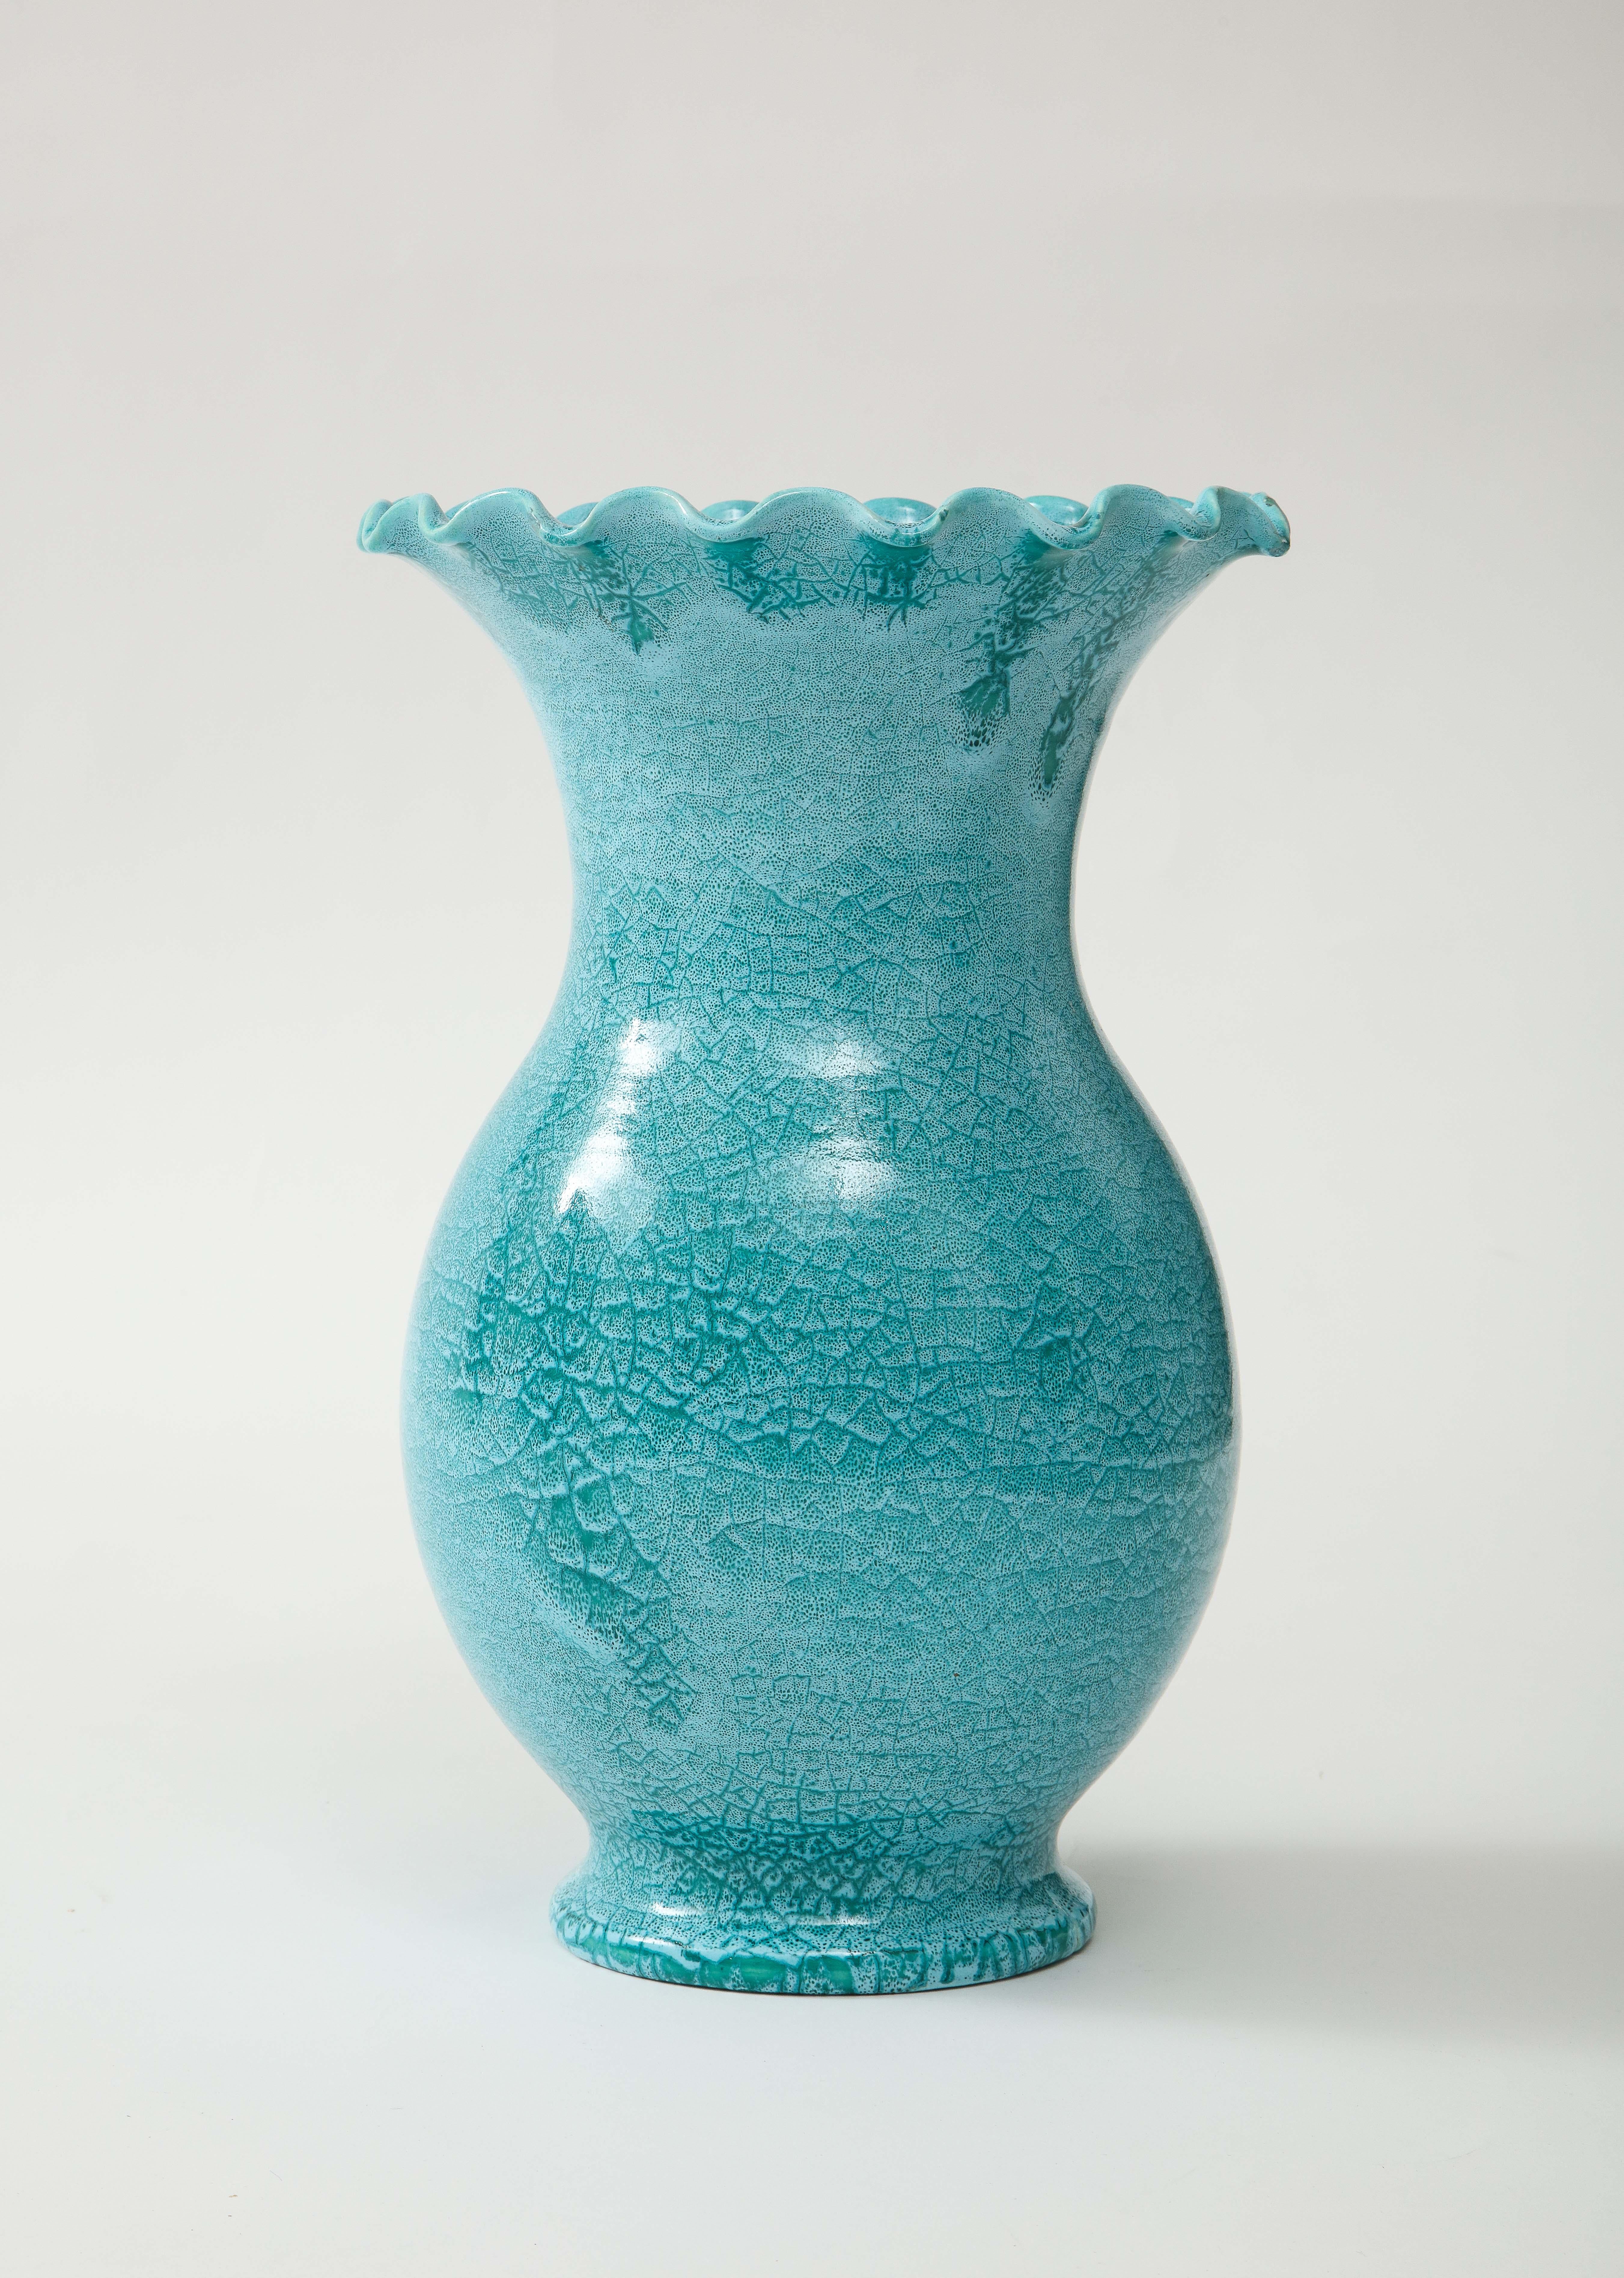 Céramique Vase d'Accolay Pottery en vente